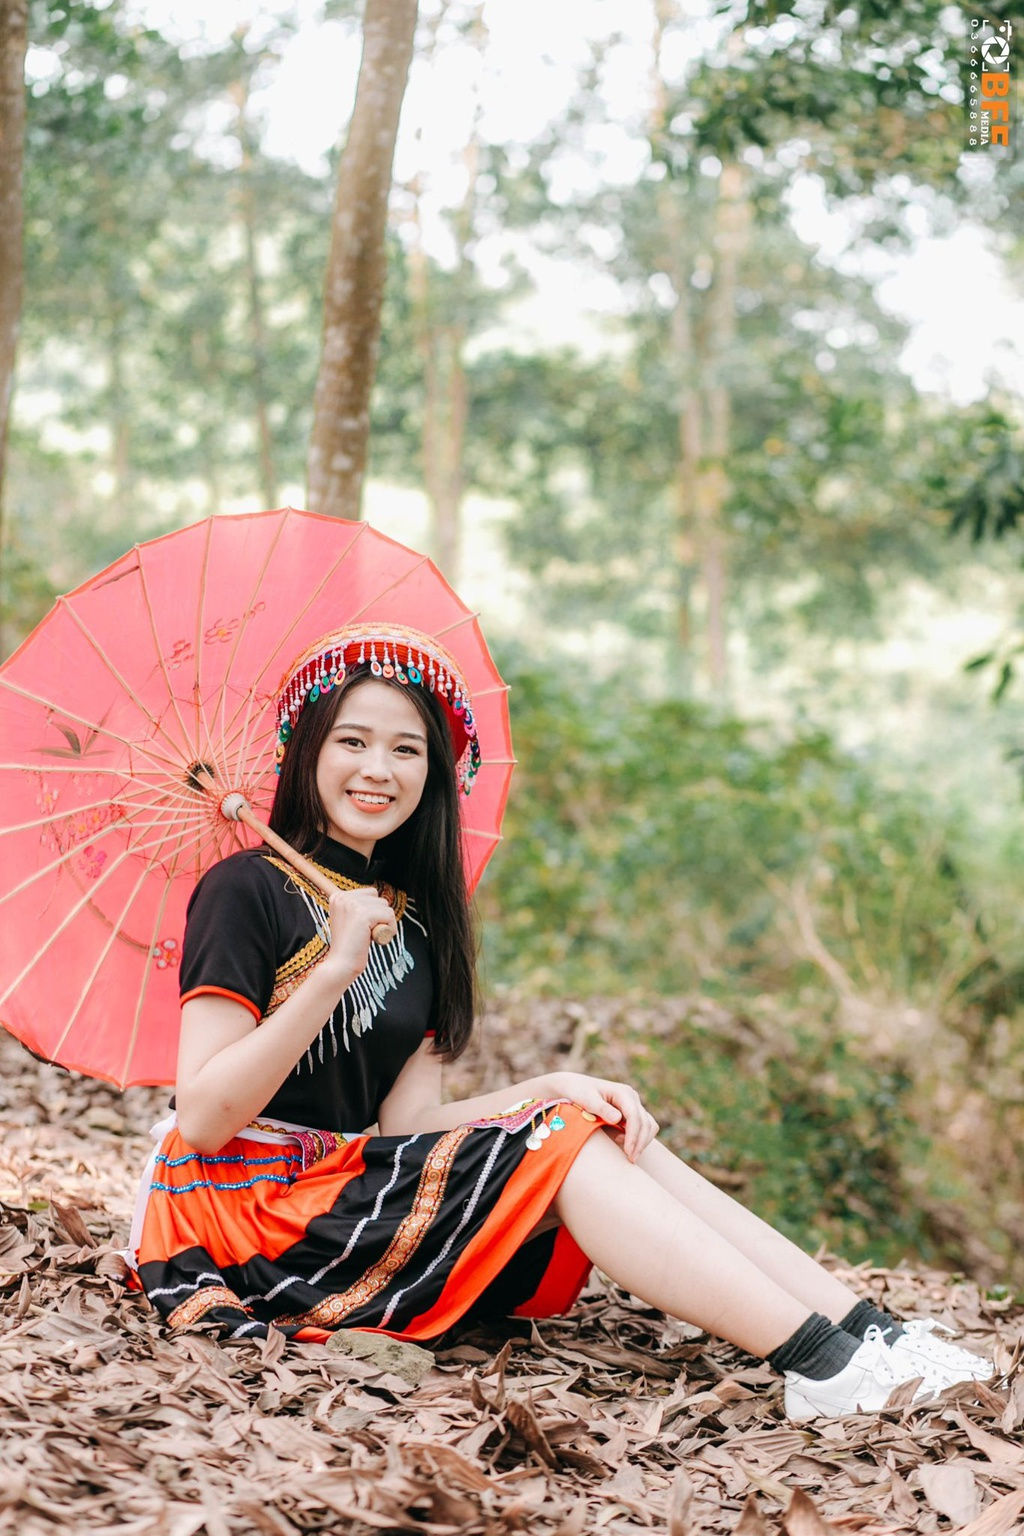 Tân Hoa hậu Việt Nam 2020 mỗi tháng được bố mẹ chu cấp 3 triệu đồng - Ảnh 5